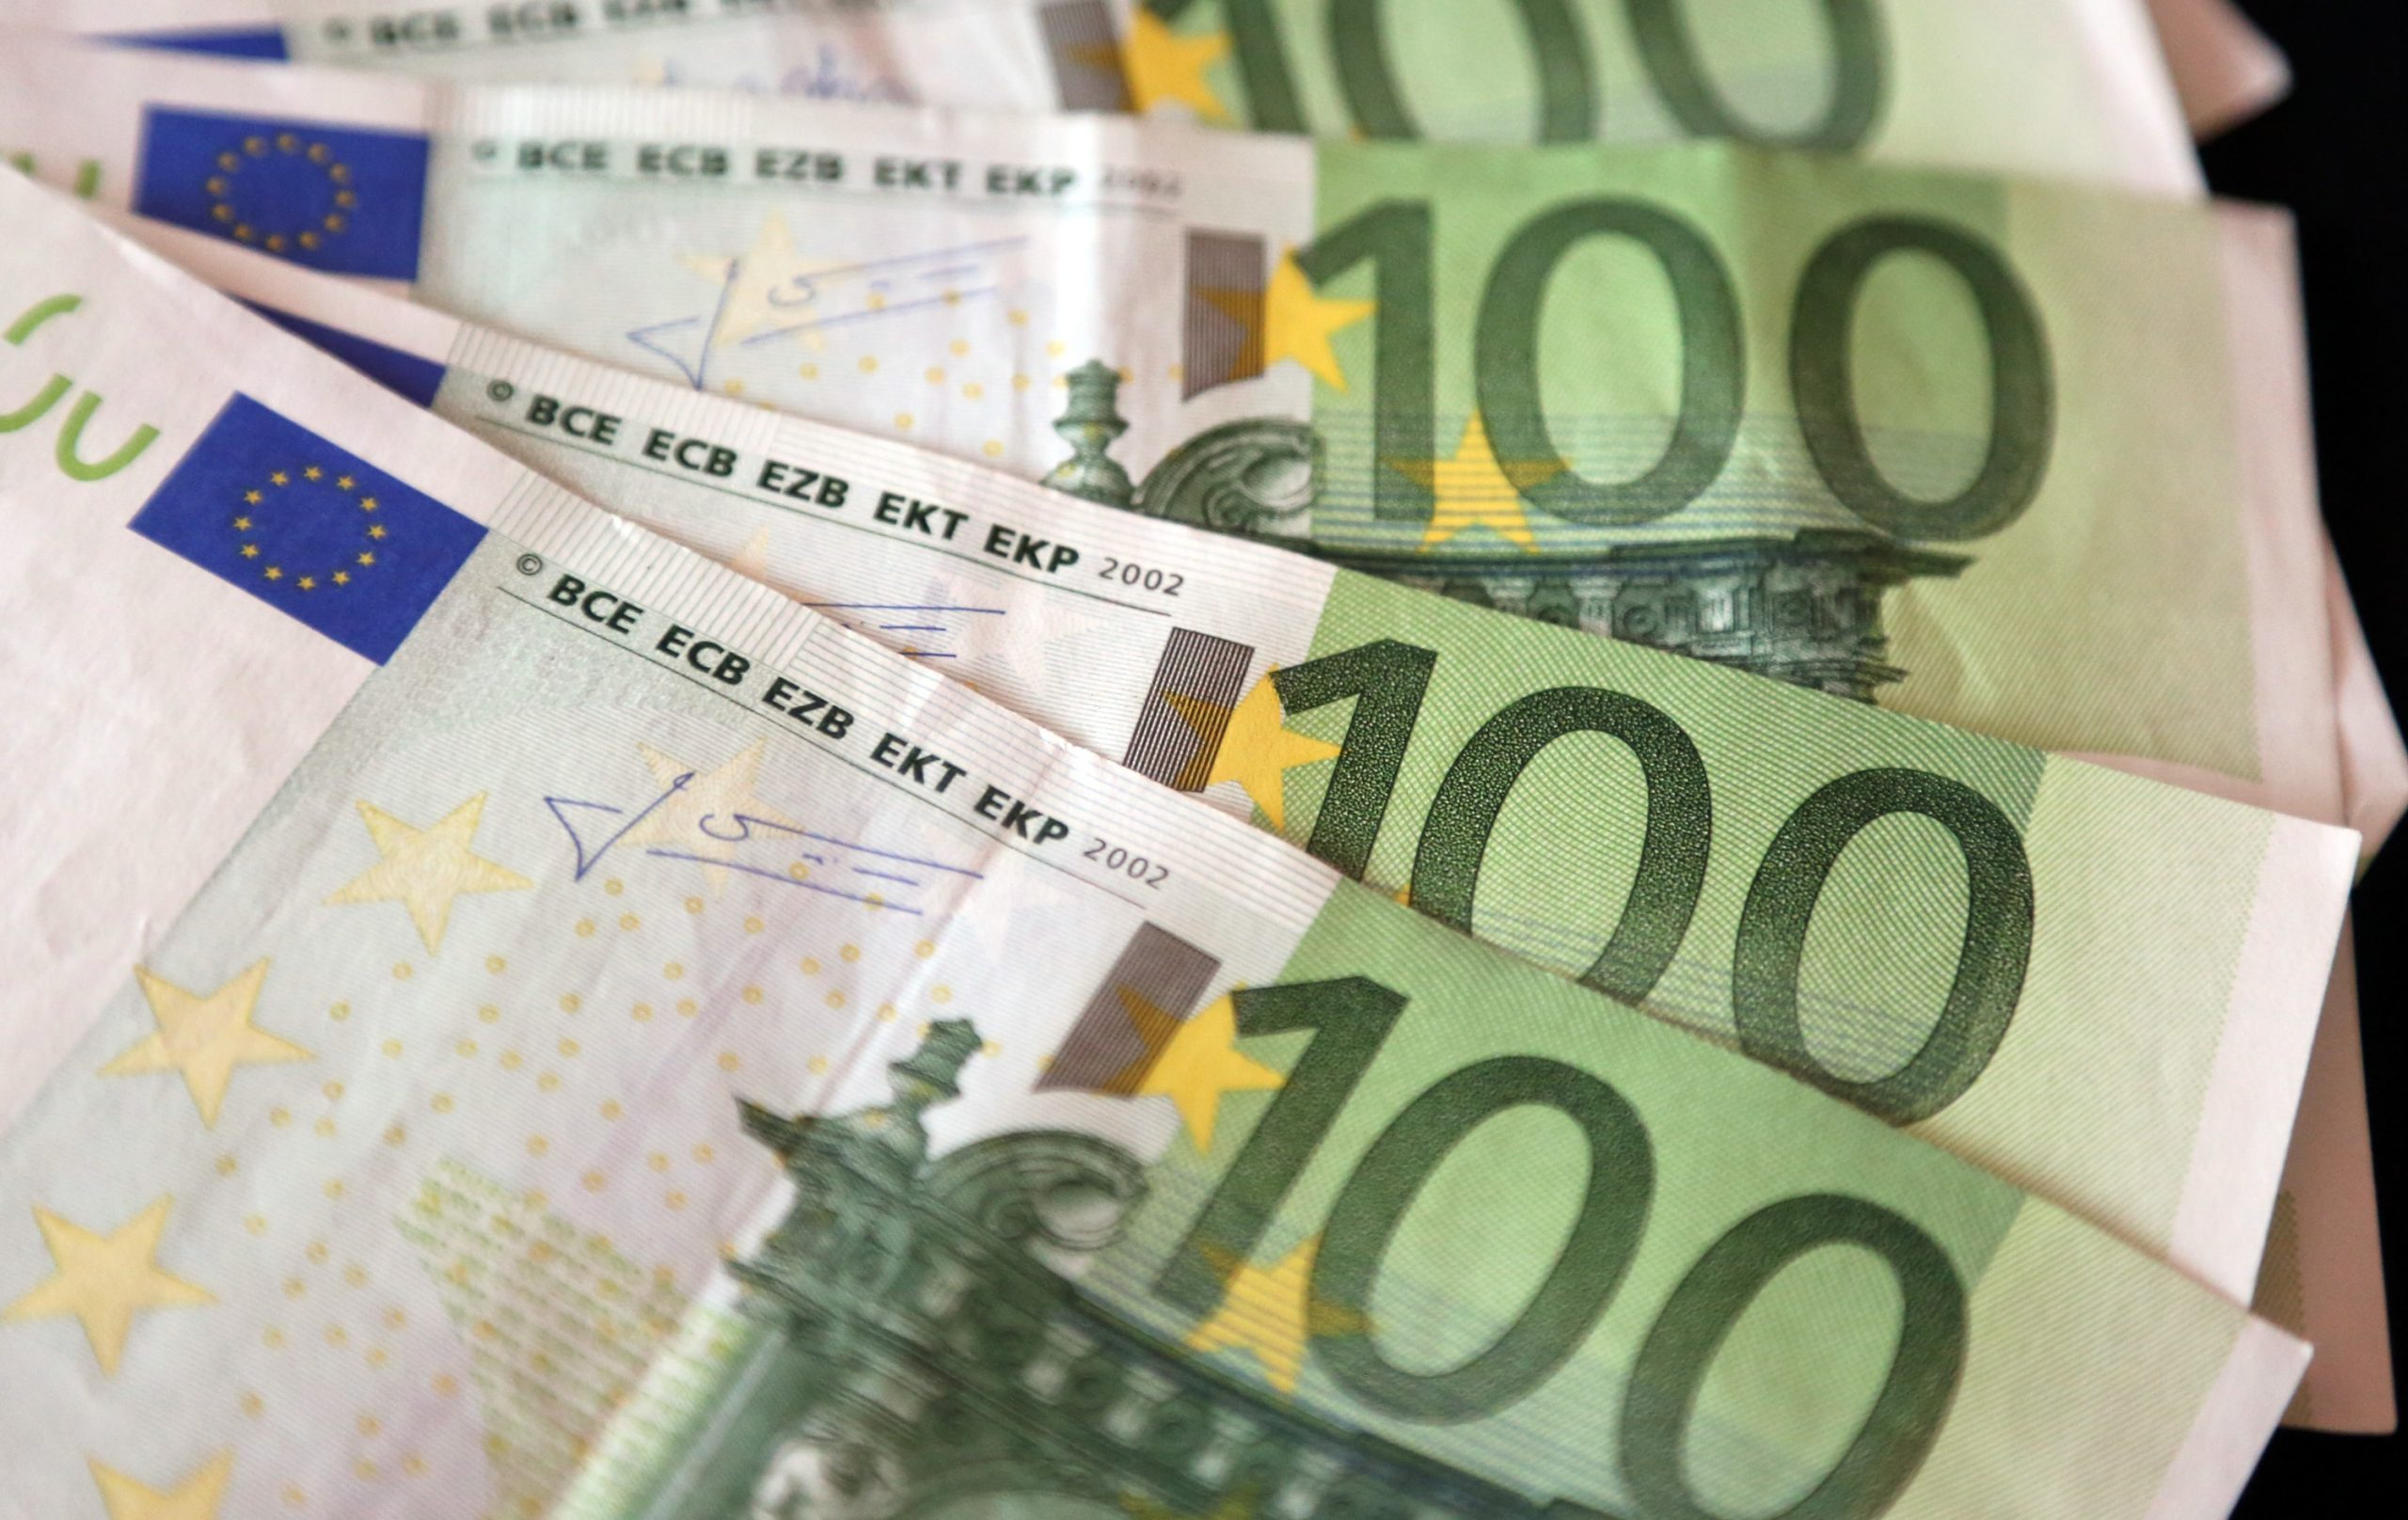 18.03.2015., Sibenik - Trzisni analiticari procjenjuju da ce vrijednost eura i americkog dolara uskoro biti izjednacena te da bi europska valuta mogla dodatno oslabjeti.
Photo: Dusko Jaramaz/PIXSELL